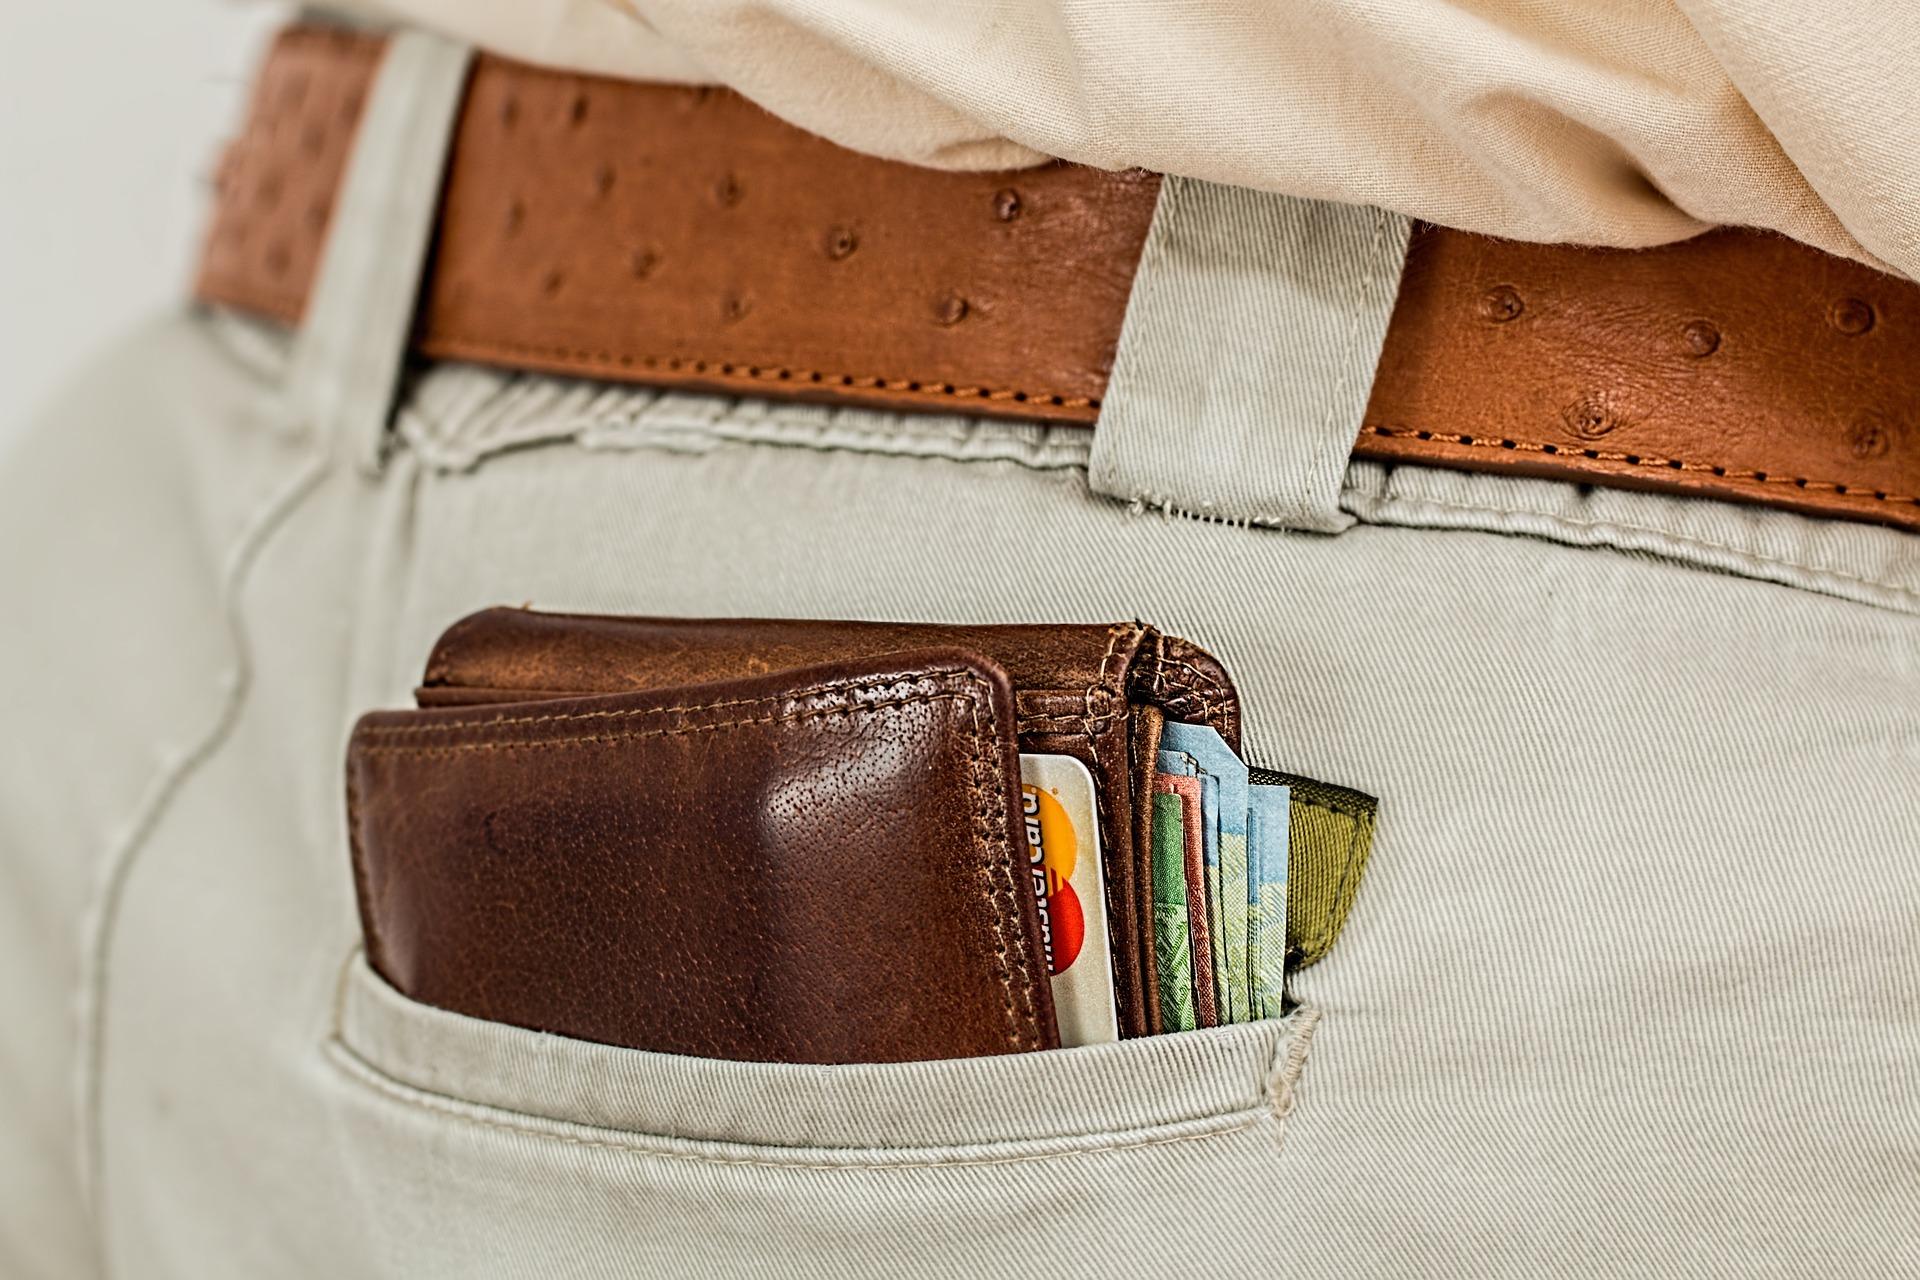 Una cartera en un bolsillo. Fuente: Pixabay.